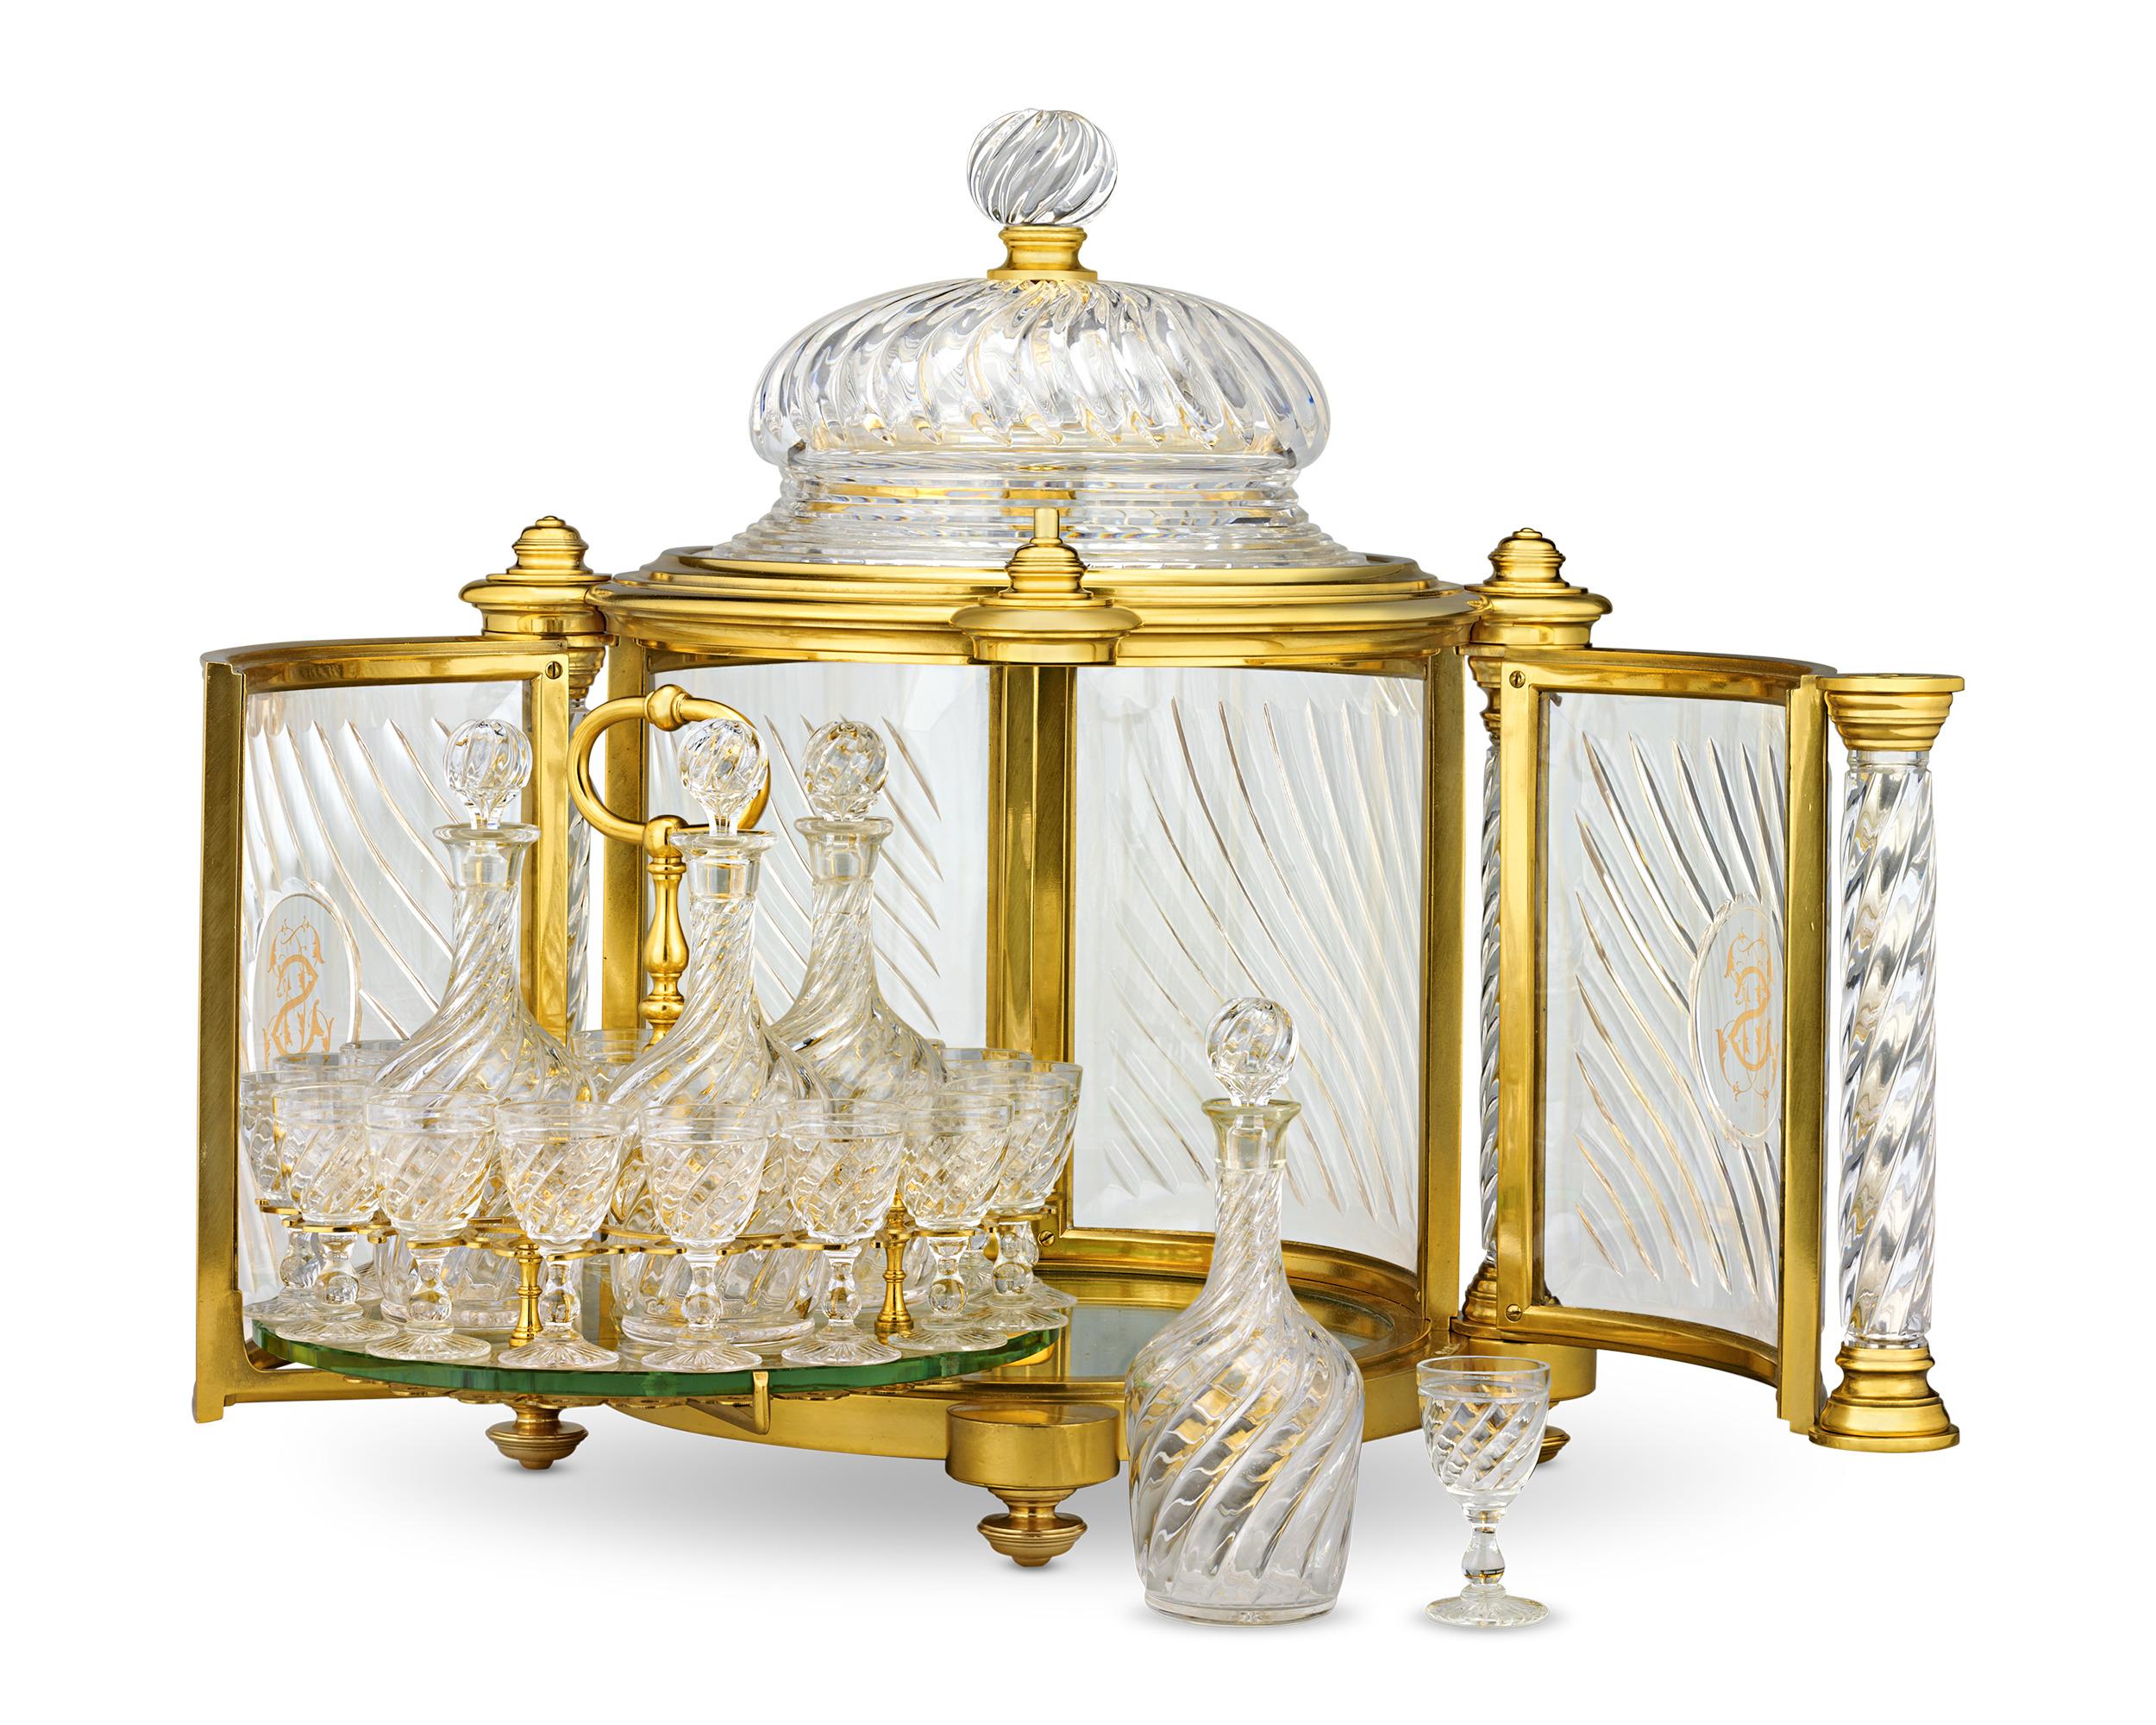 Ce monumental coffret à liqueur en bronze doré du XIXe siècle est un exemple de la maîtrise artisanale de la célèbre maison de luxe Baccarat. Les portes s'ouvrent pour révéler une base en miroir et une étagère à verre qui accueille quatre bouteilles